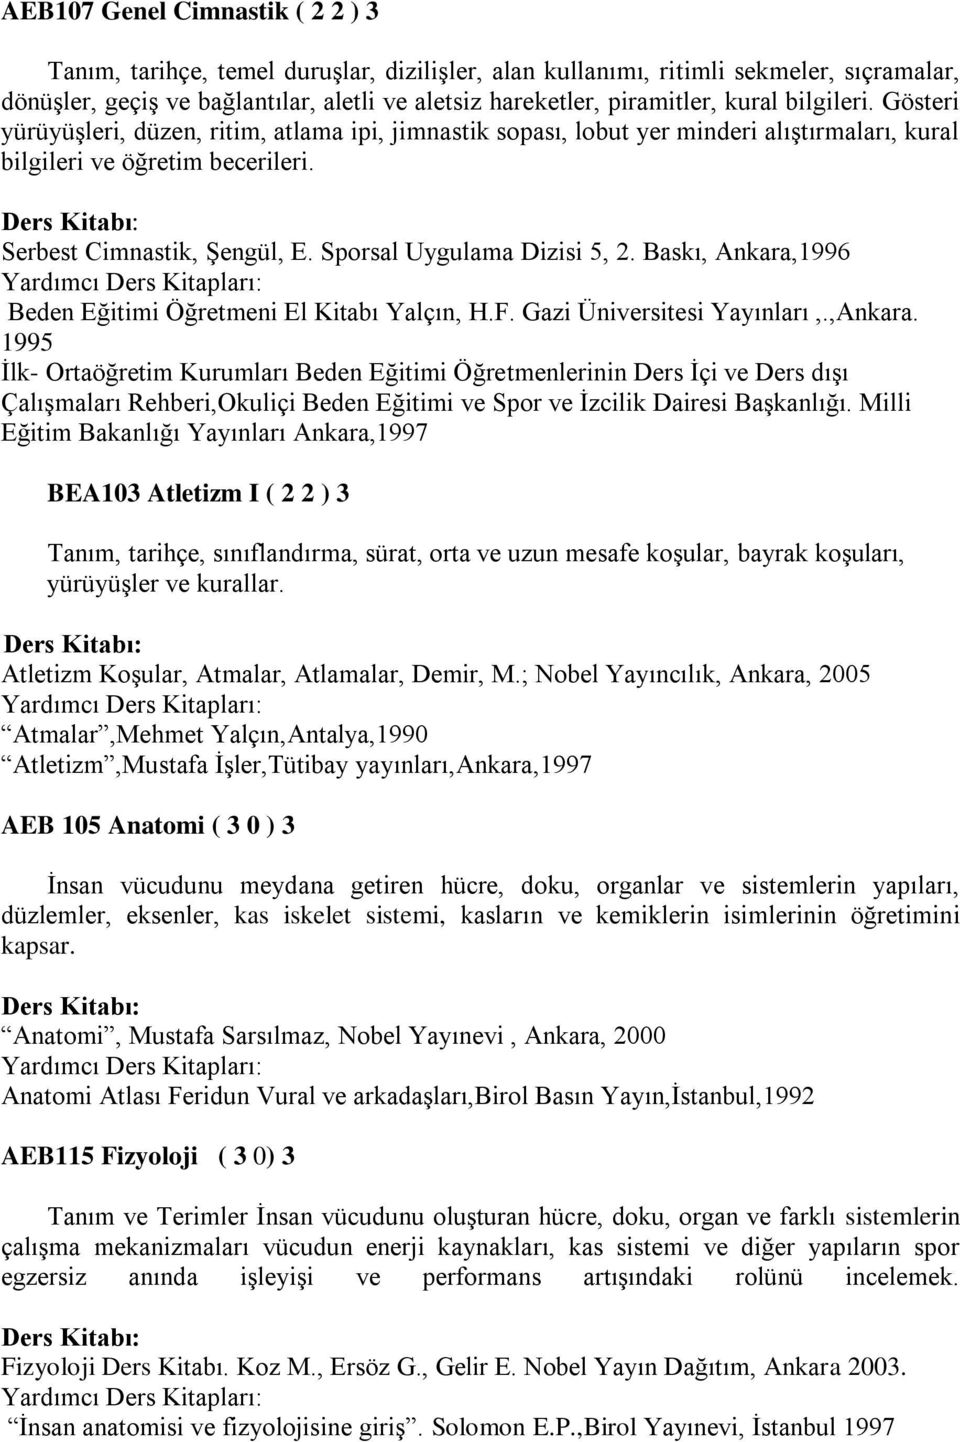 Sporsal Uygulama Dizisi 5, 2. Baskı, Ankara,1996 Beden Eğitimi Öğretmeni El Kitabı Yalçın, H.F. Gazi Üniversitesi Yayınları,.,Ankara.